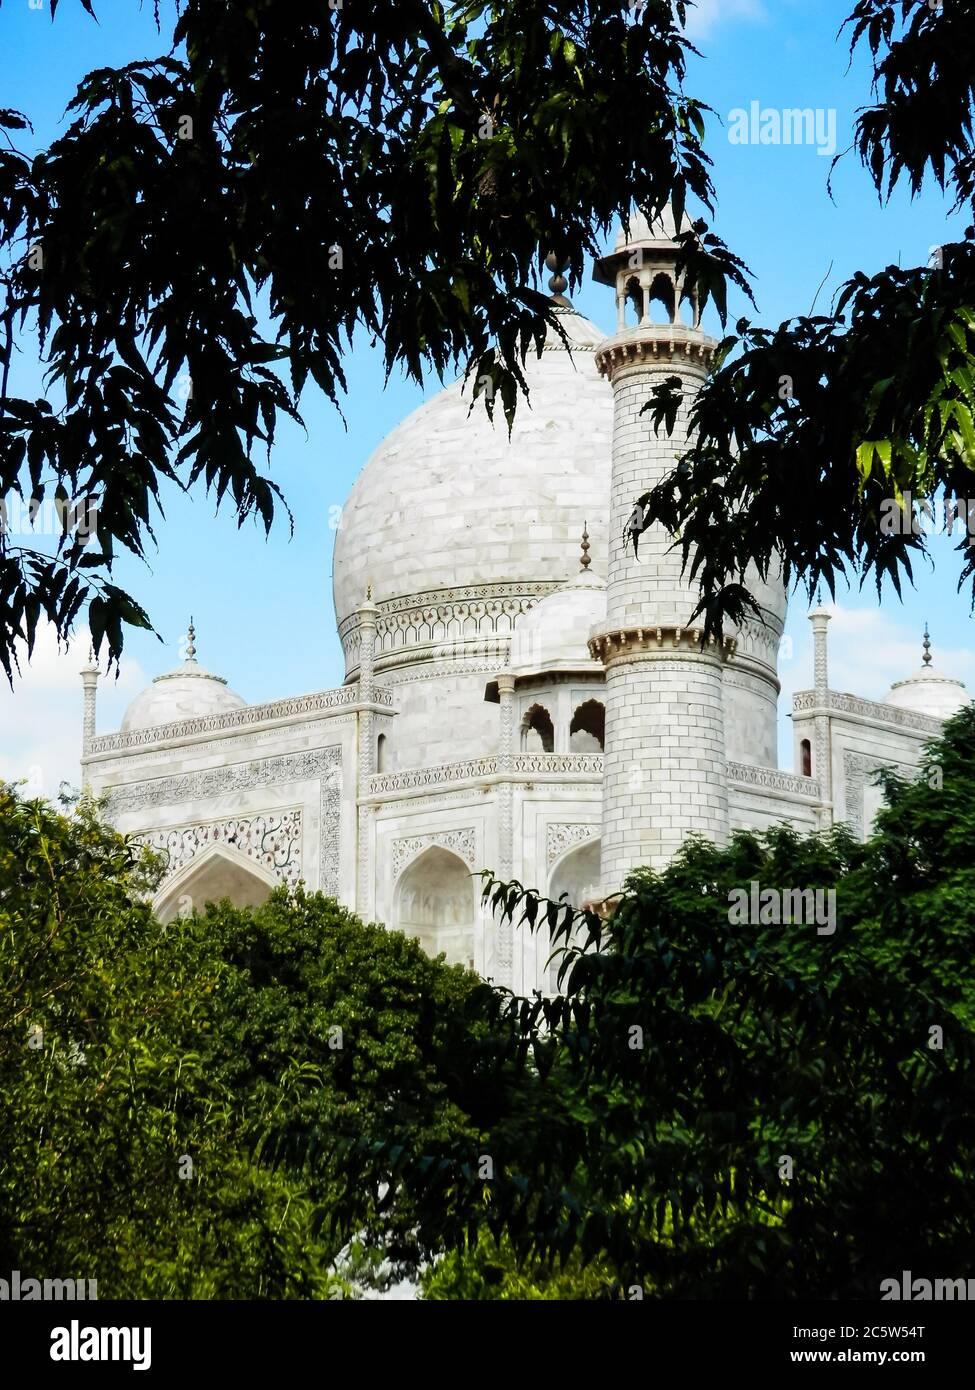 Taj Mahal, Agra, Uttar Pradesh, Nordindien. Eines der Neuen Sieben Weltwunder und eines der meistbesuchten UNESCO-Welterbestätten Indiens. Stockfoto